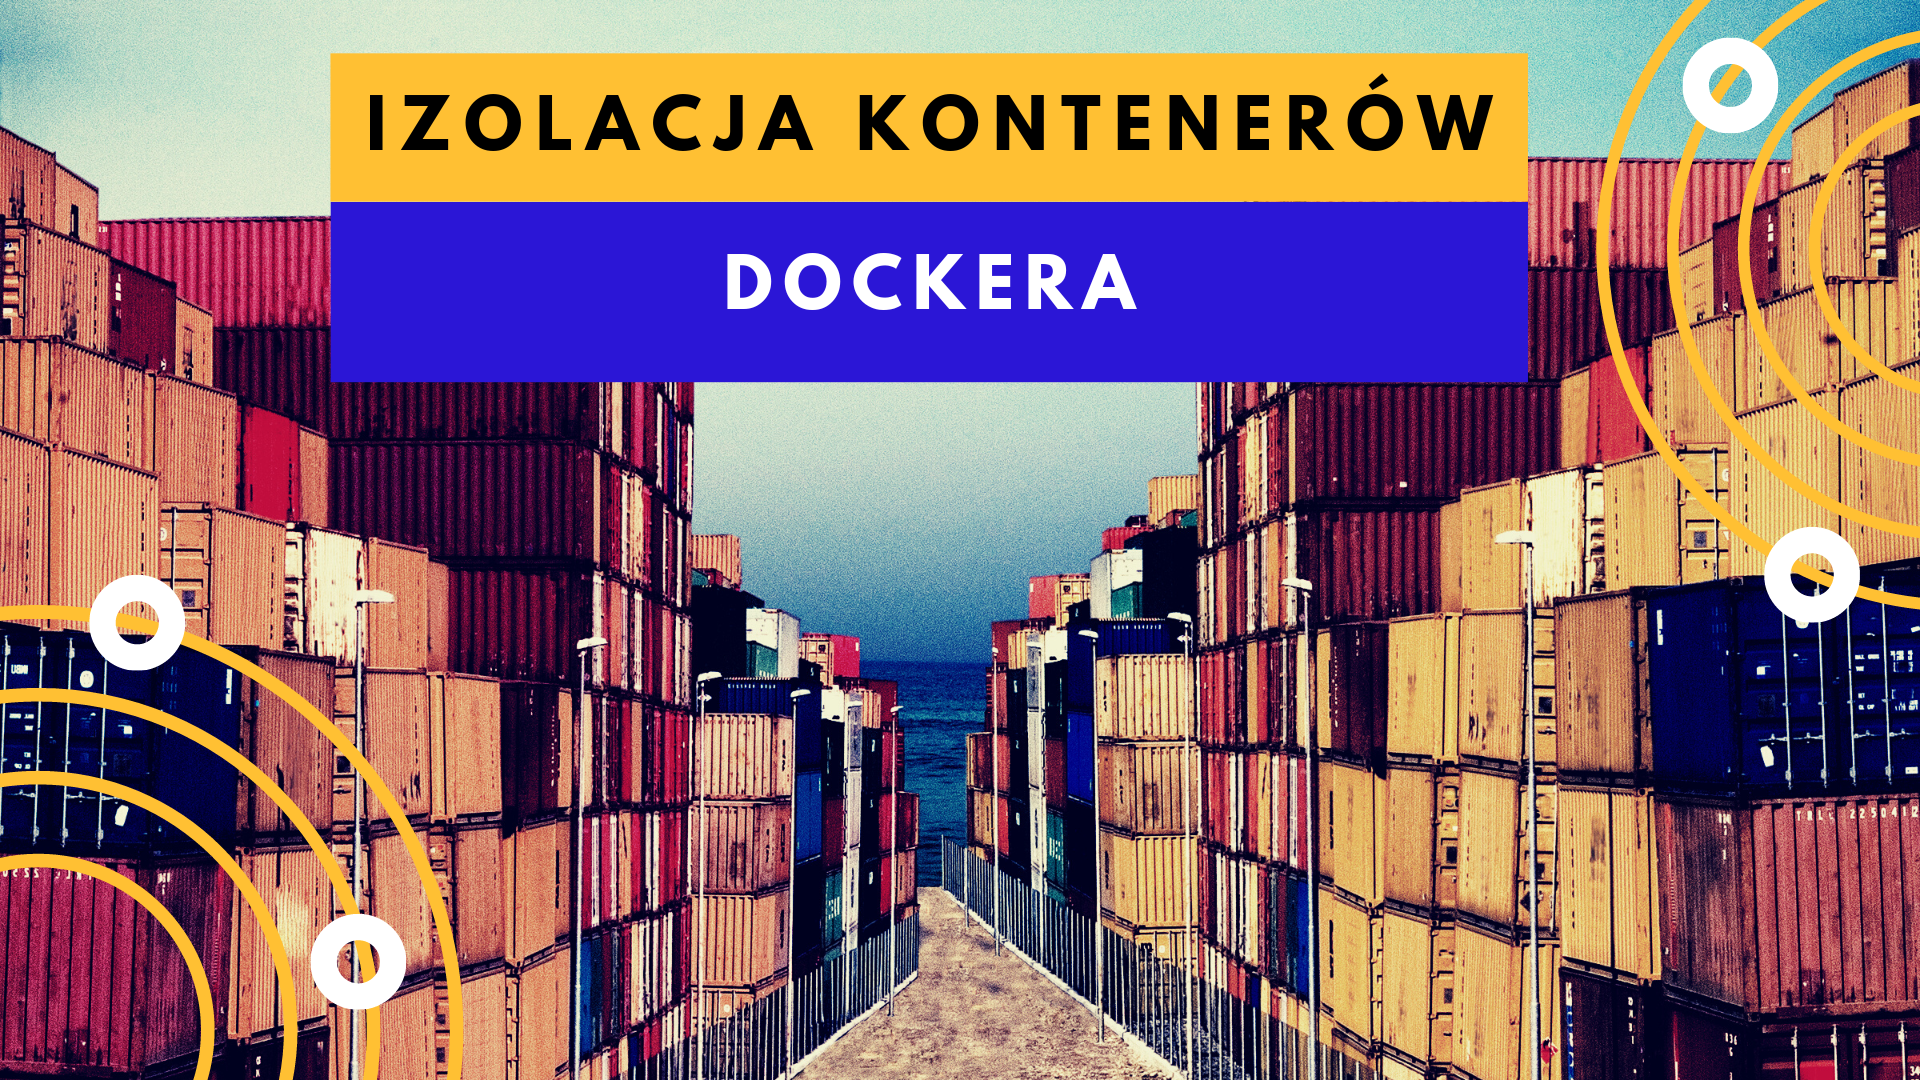 Izolacja kontenerów Dockera